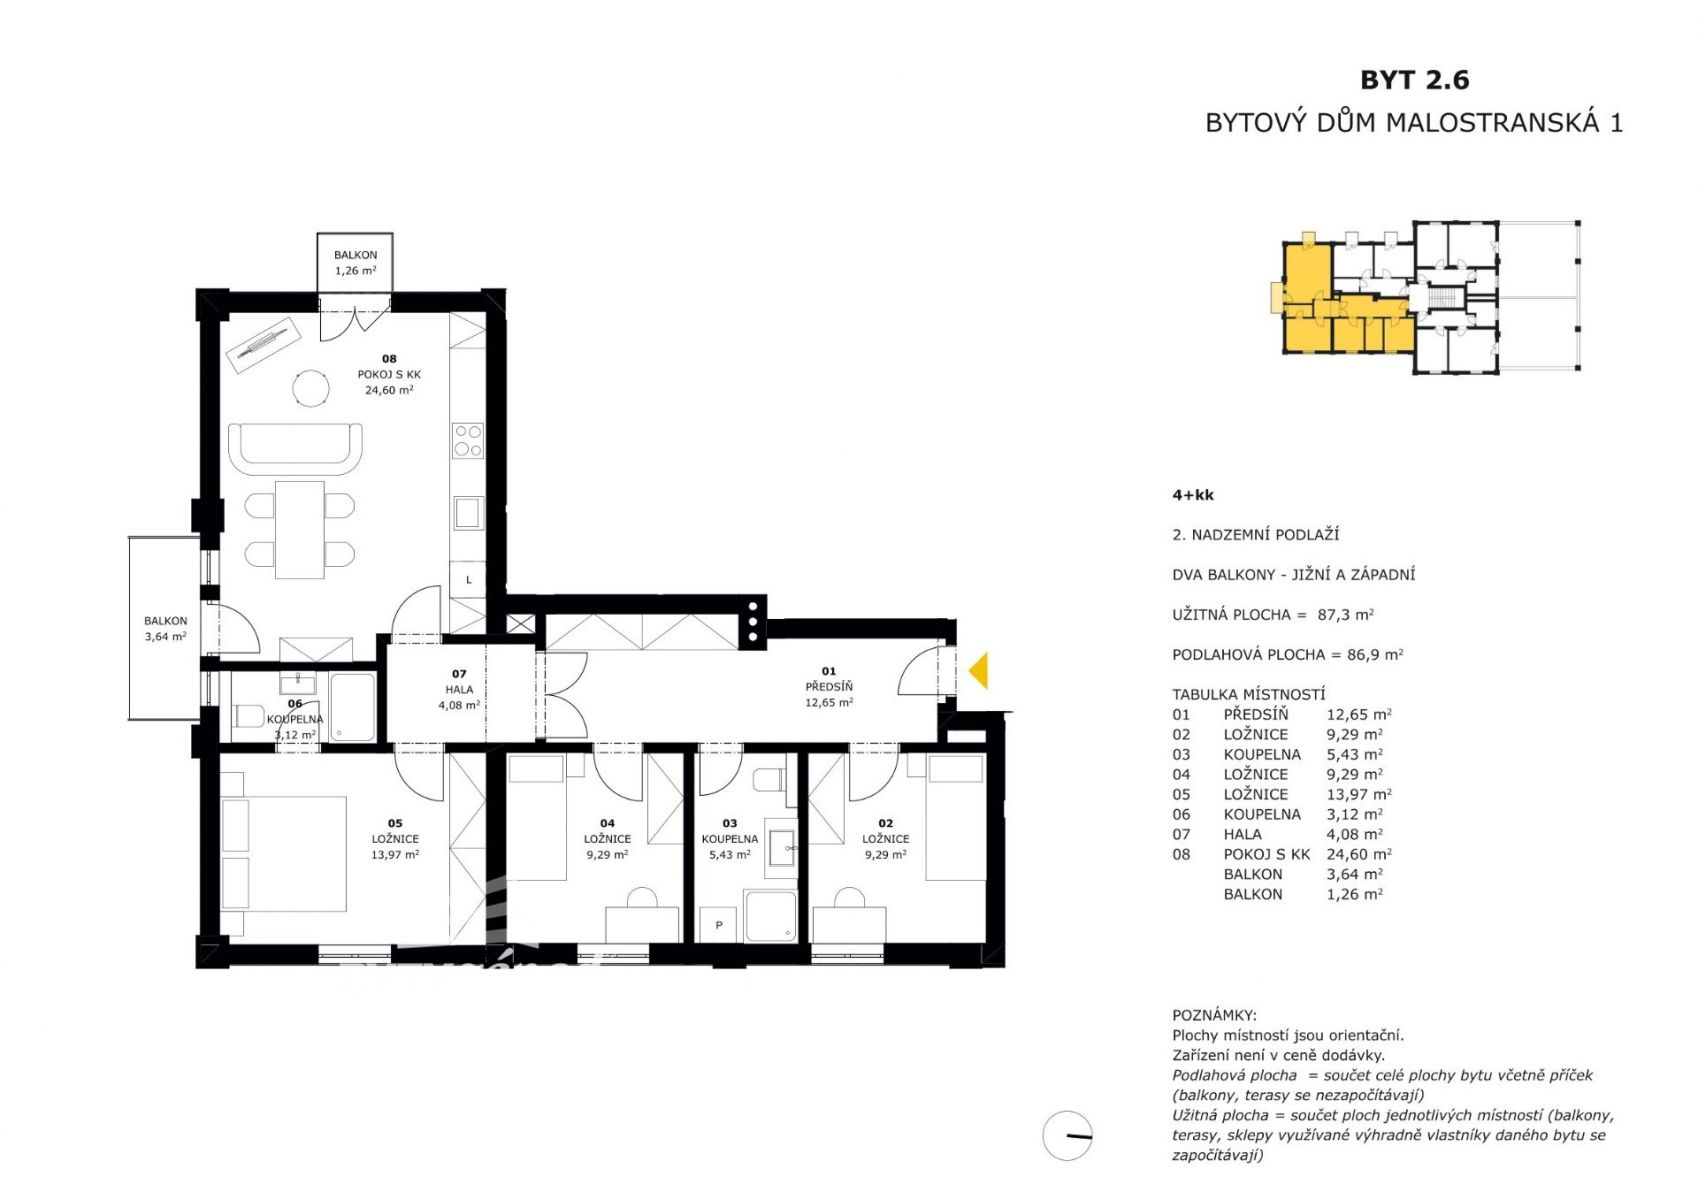 Prodej, Byty 4+kk (2.6), 87 m2 - Malostranská, obrázek č. 3